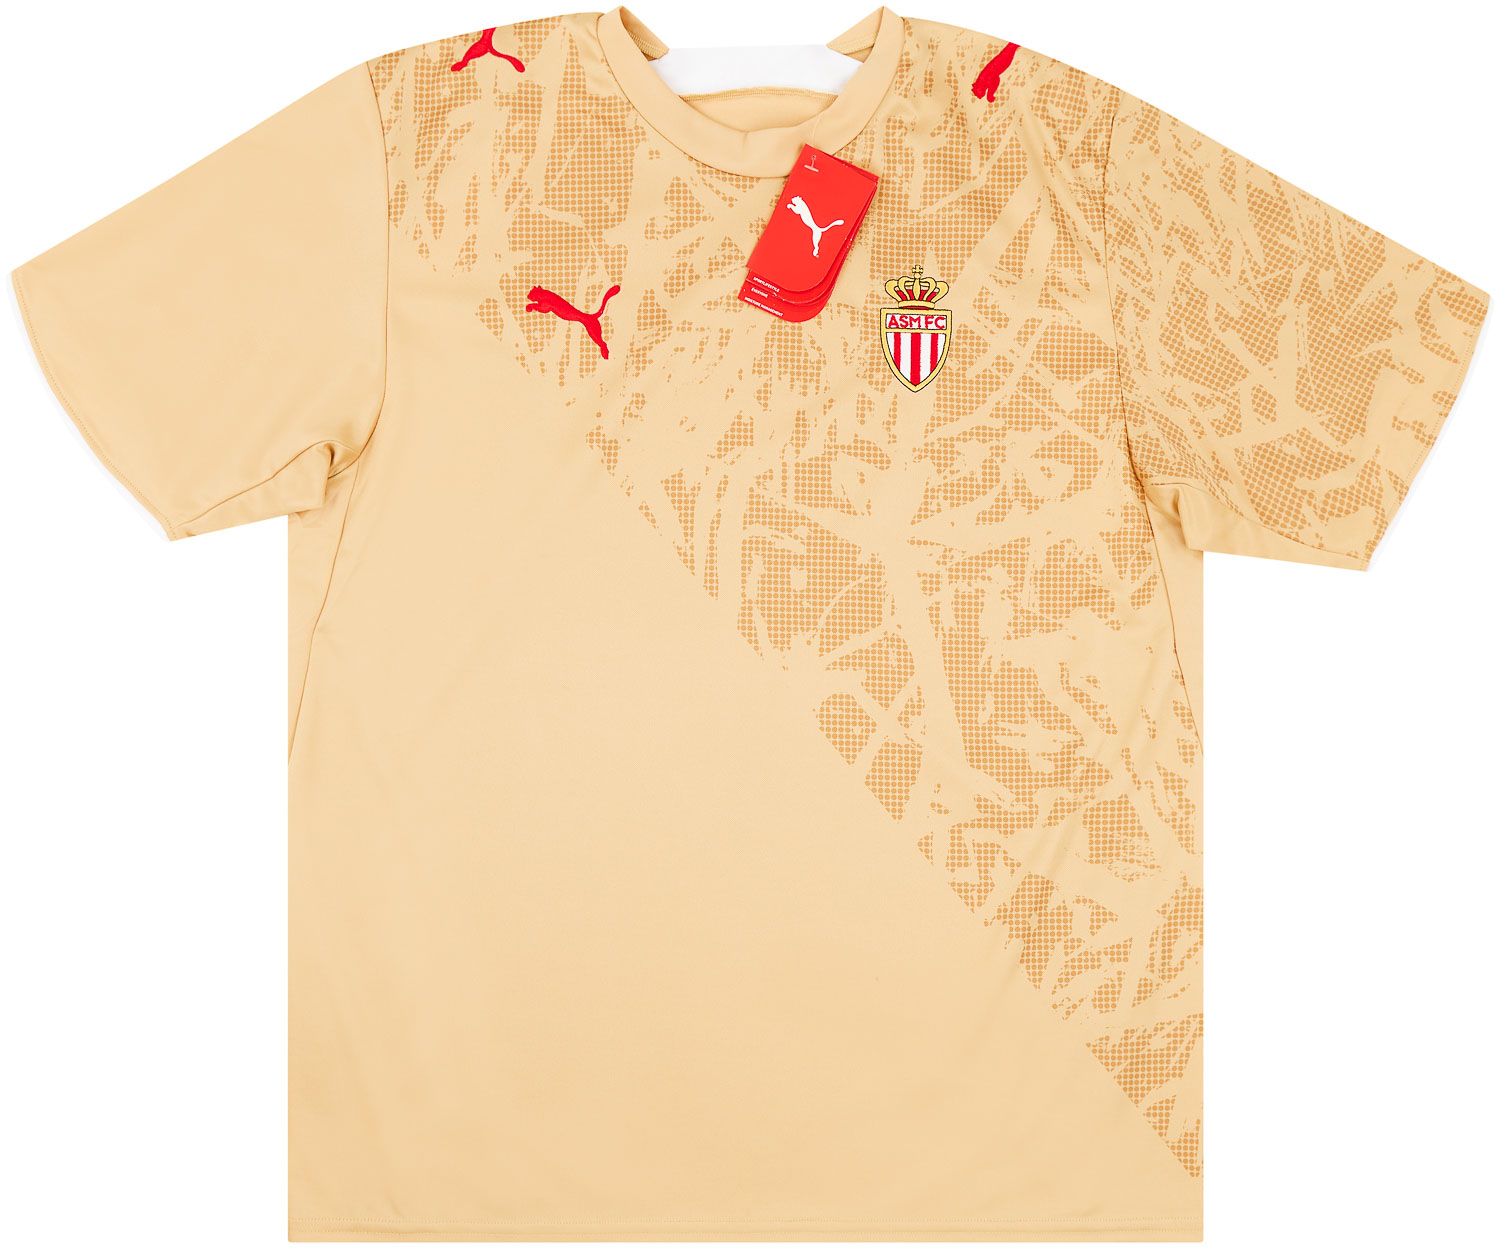 2006-07 Monaco Away Shirt *New w/ Defects*